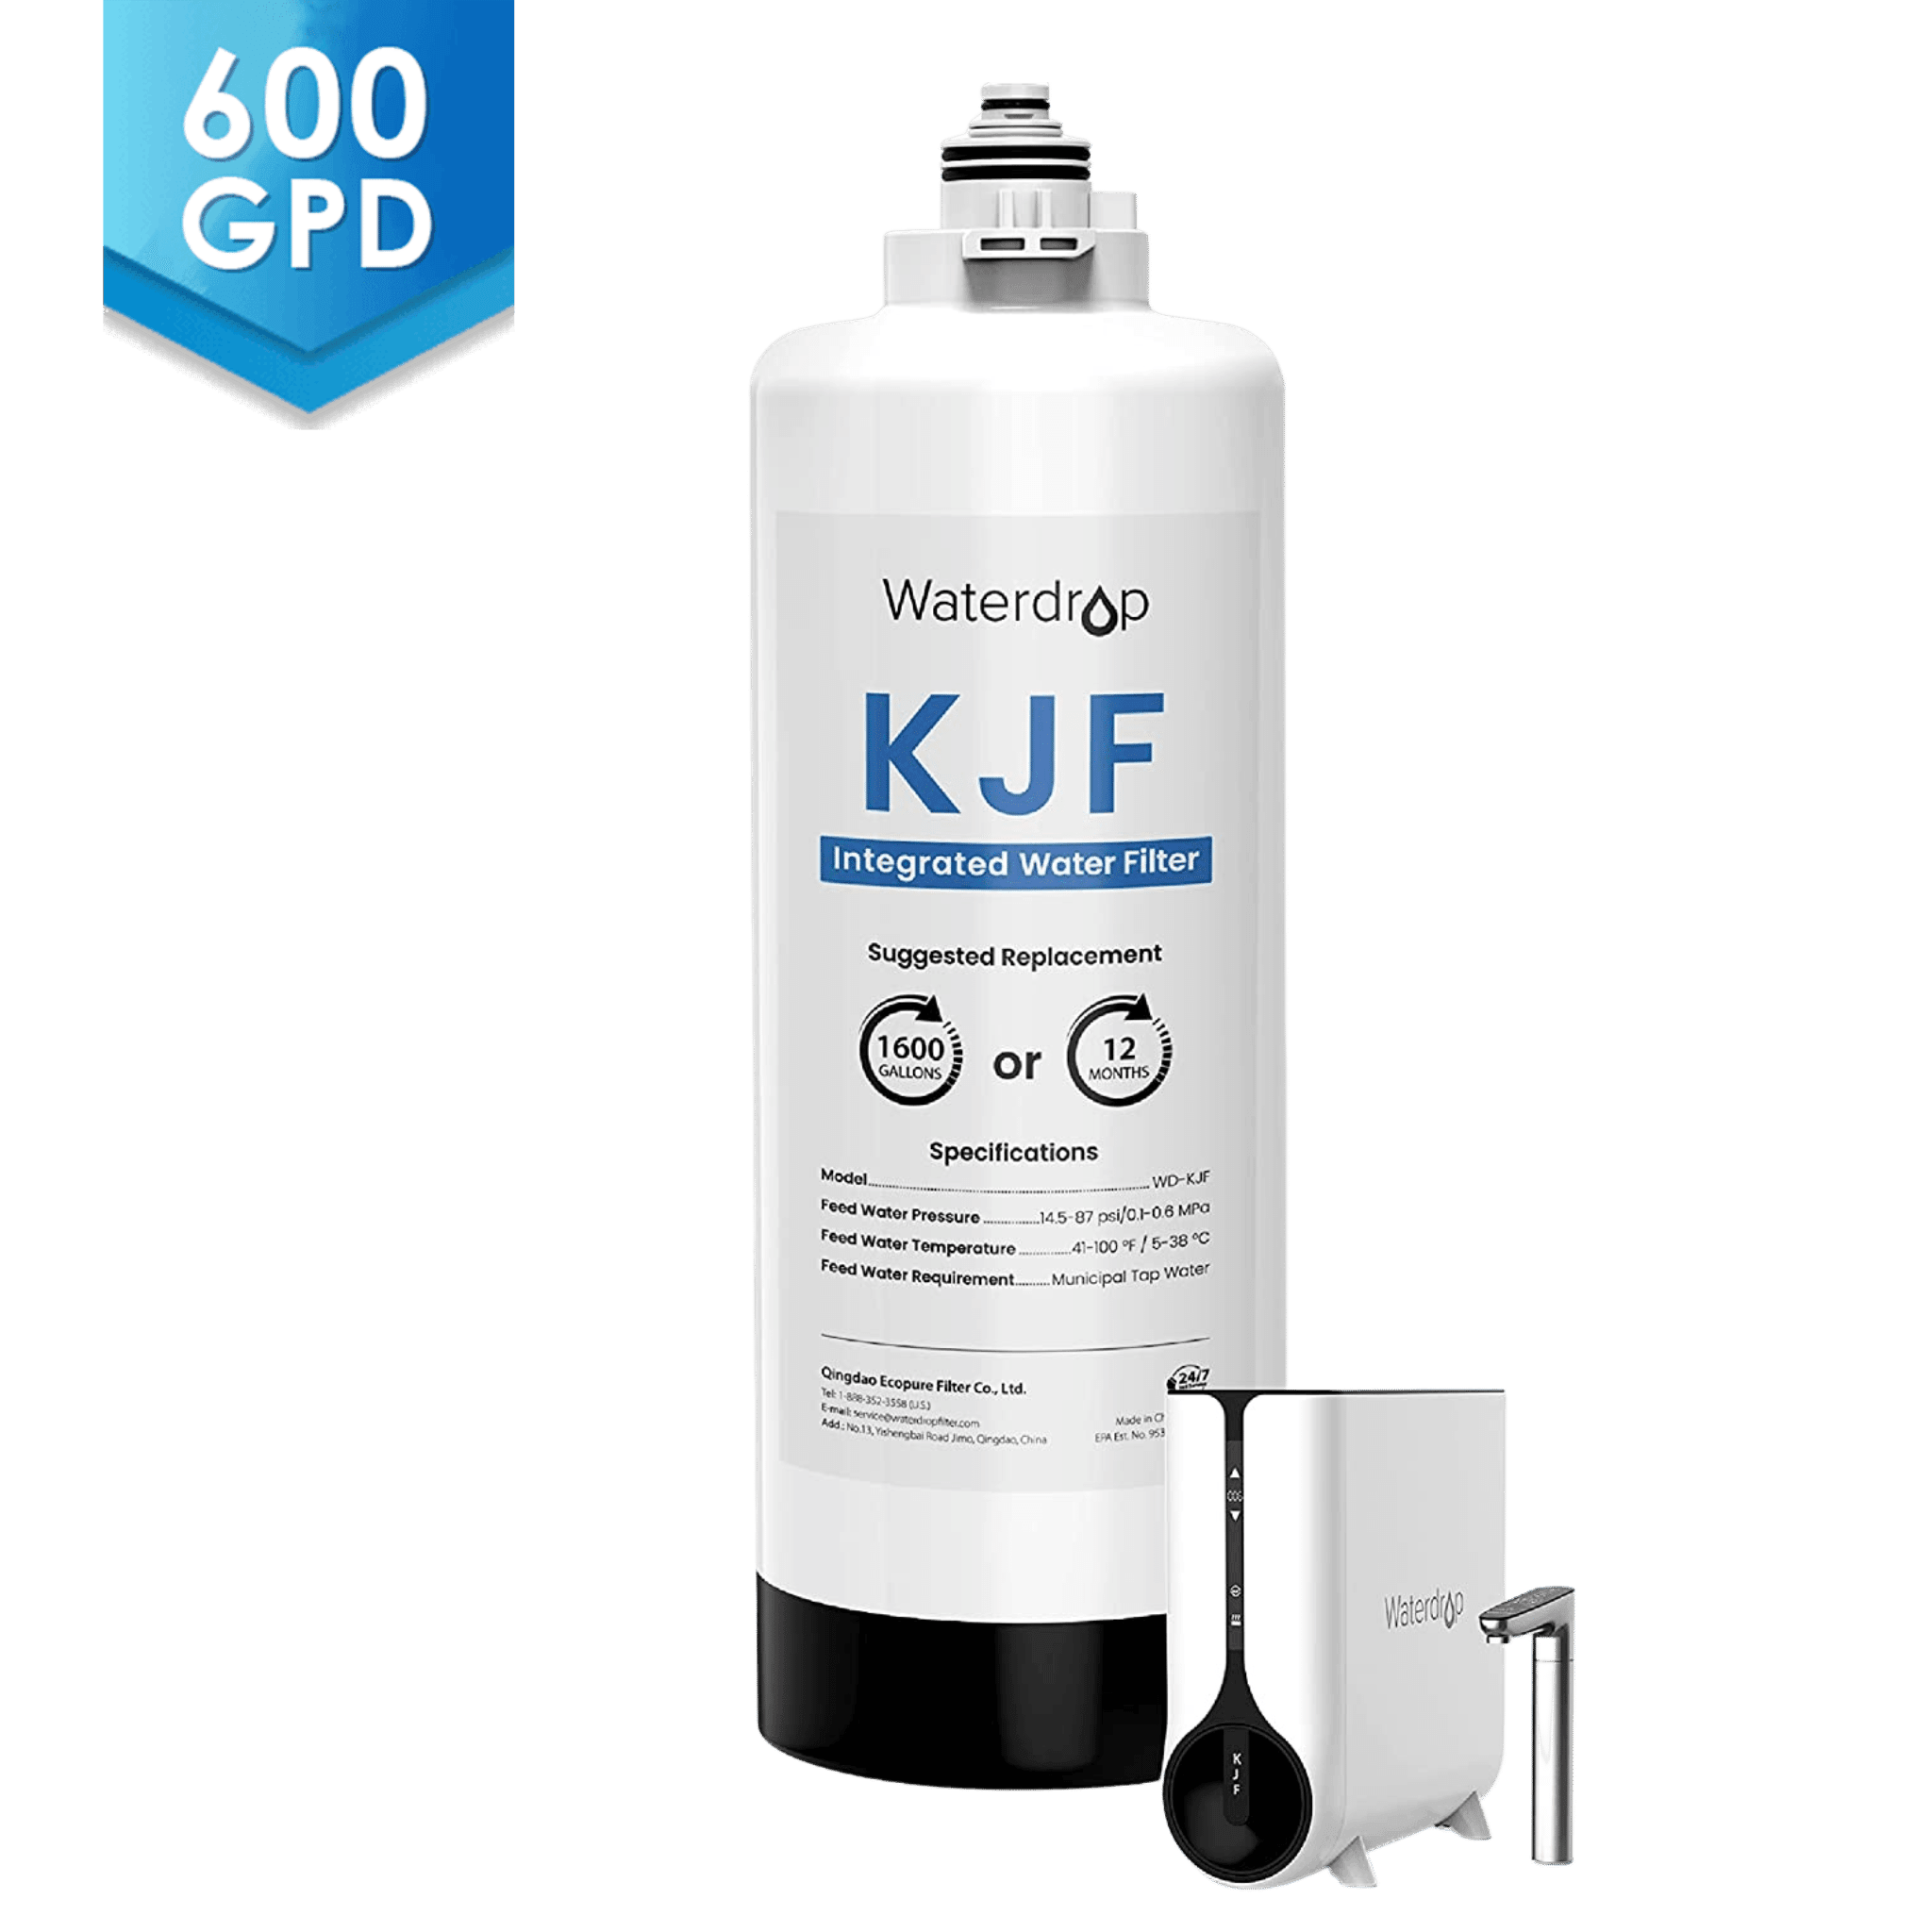 Filtre WD-KJF pour système de distribution instantanée d'eau chaude par osmose inverse Waterdrop K6 